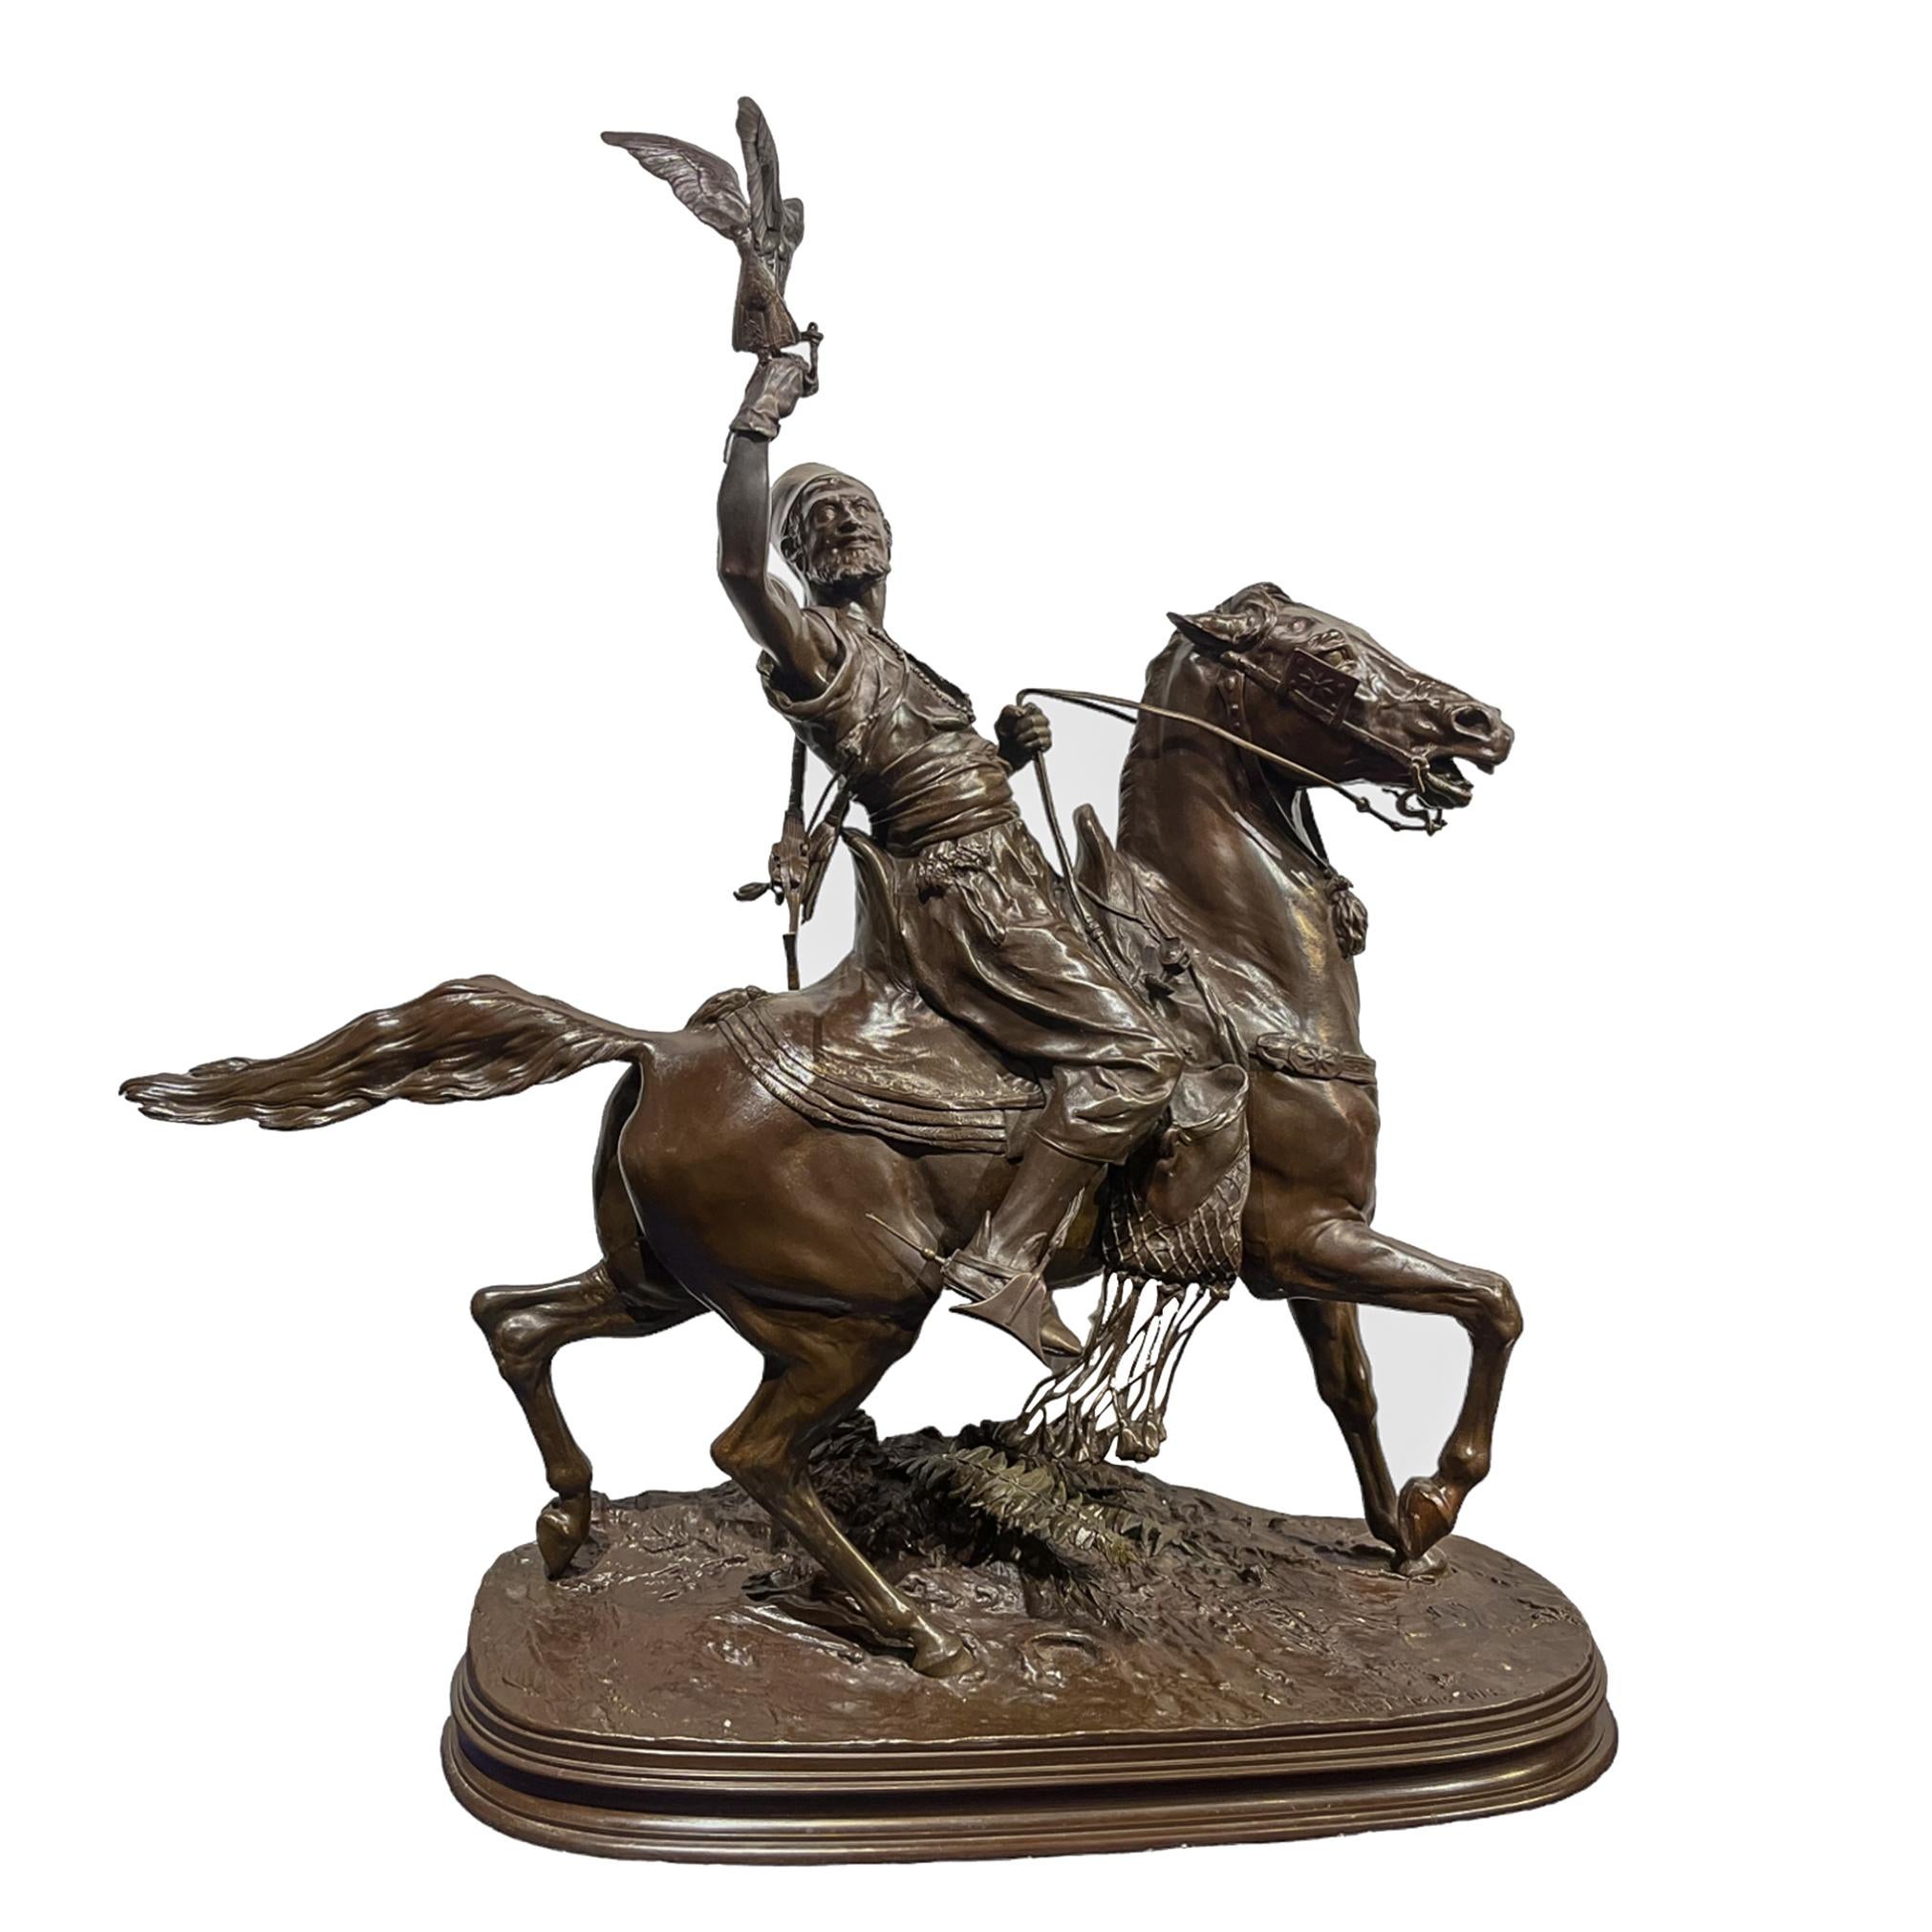 Statue dynamique d'un fauconnier arabe à cheval en mouvement. Un faucon se pose sur le bras du fauconnier tandis que son cheval trotte sur un chemin de boue en laissant derrière lui des empreintes de corbeaux. 

Artistics : Pierre-Jules Mene